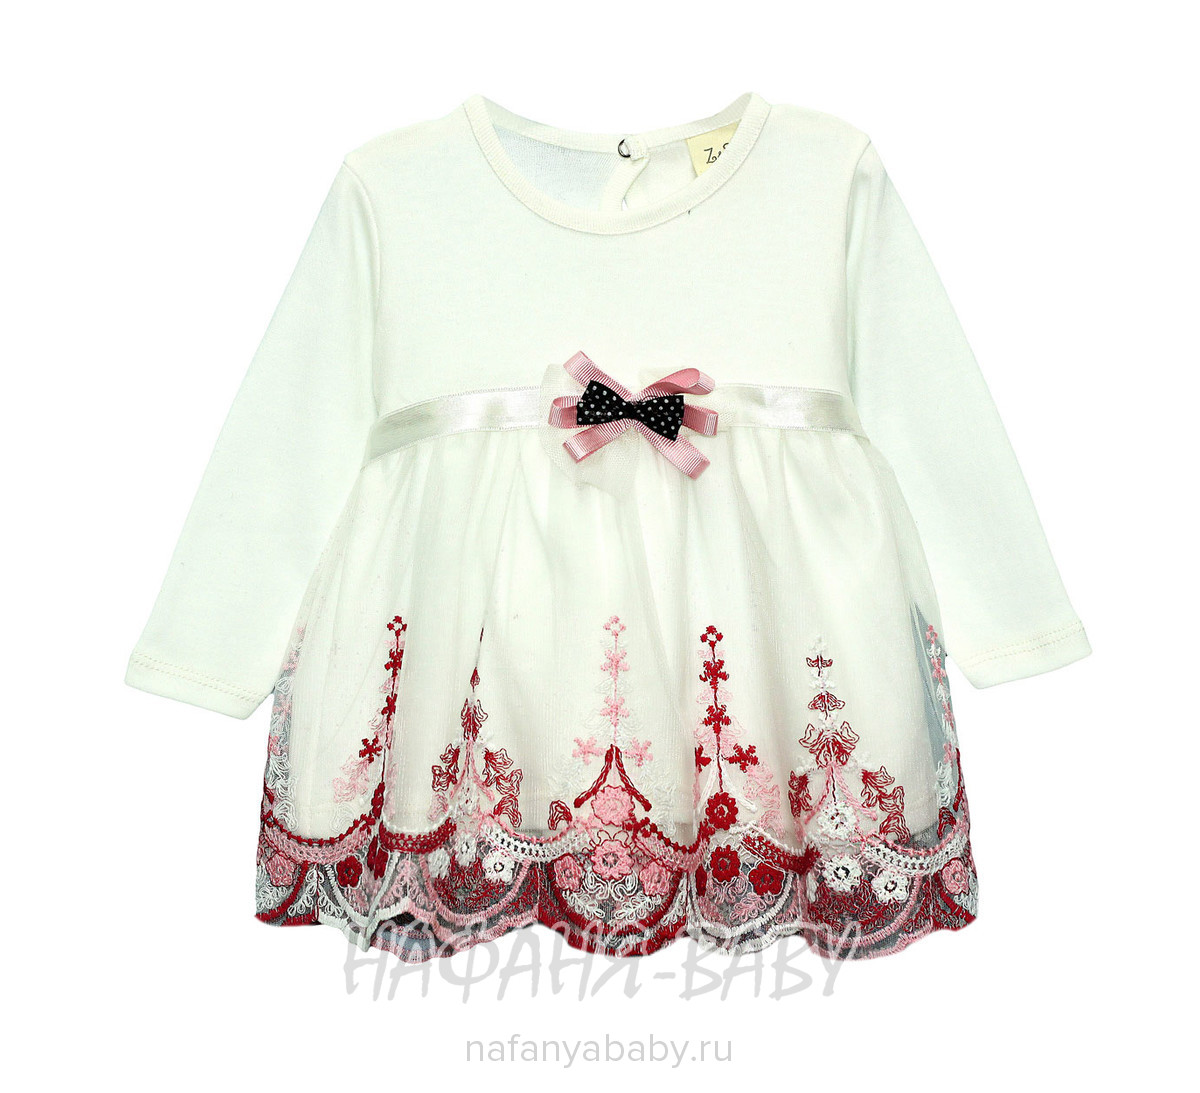 Трикотажное платье для малышки Z&S арт: 16001, 1-4 года, 0-12 мес, оптом Турция